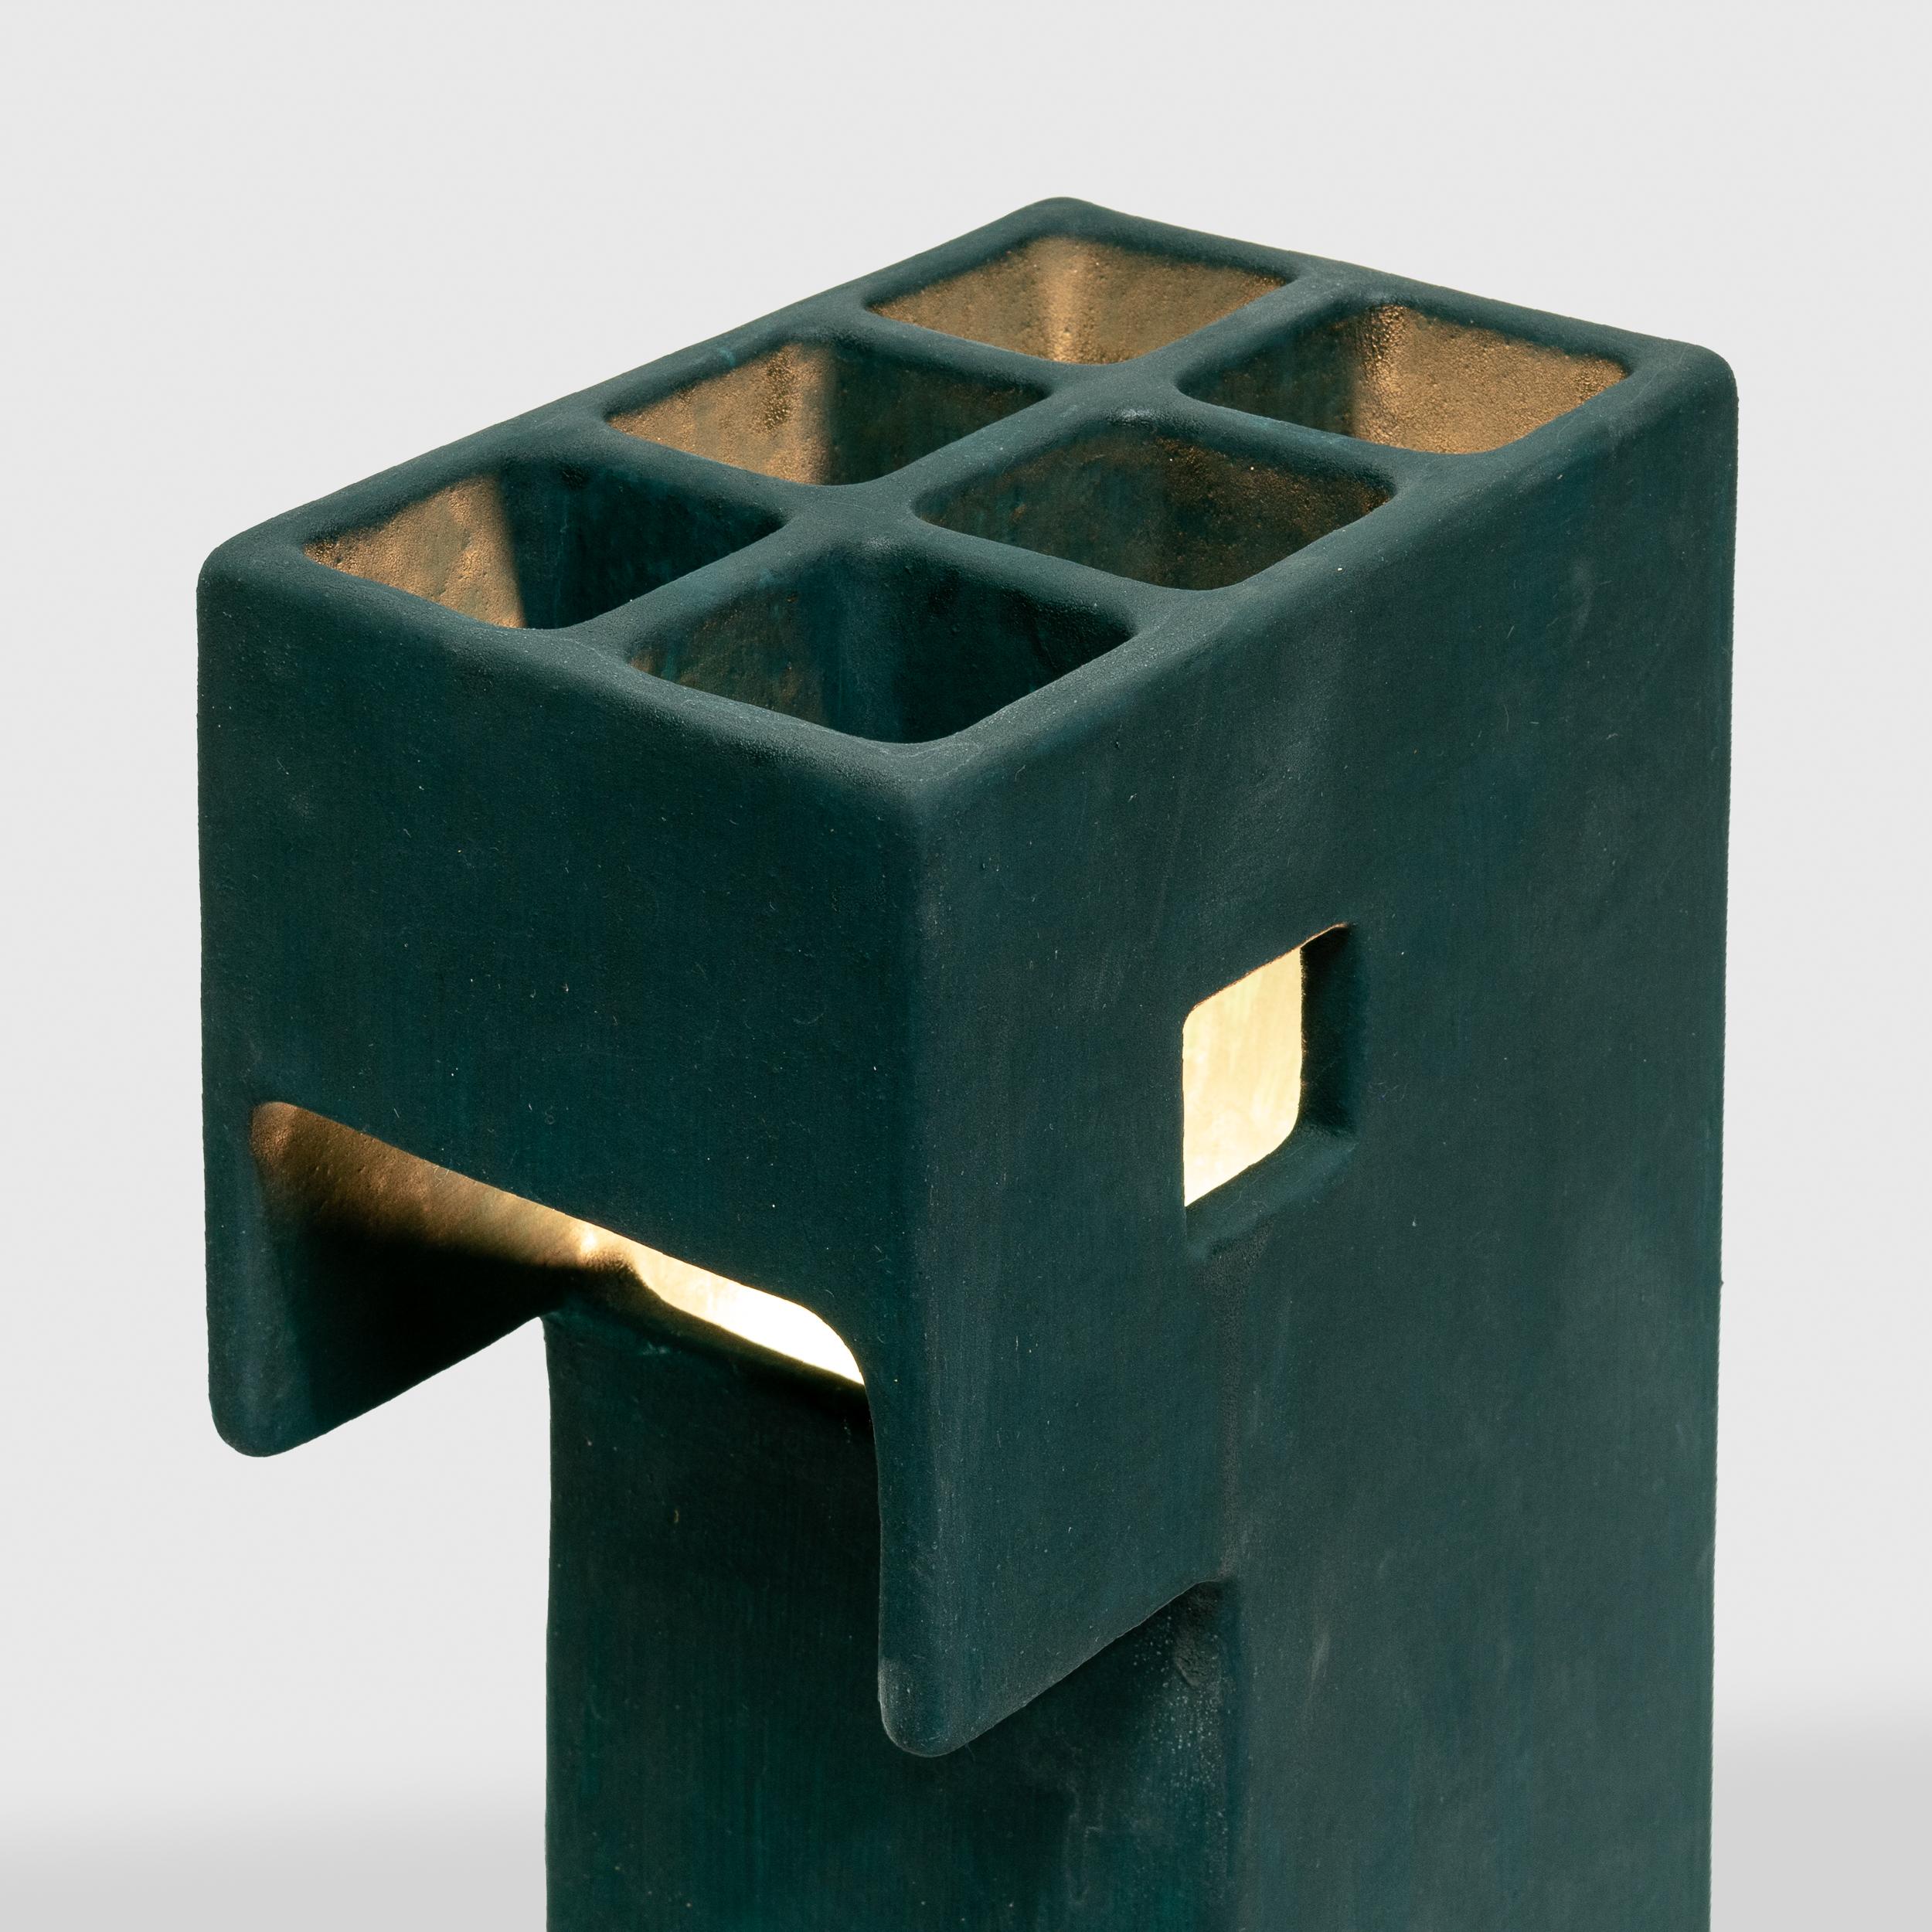 Eine einzigartige Keramik-Tischlampe, inspiriert von der brutalistischen Architektur der 1960er und 1970er Jahre. 

Ding Dong Tischleuchte von Luft Tanaka Studio

1 Stück auf Lager. Versandfertig in 3-5 Tagen.

6 